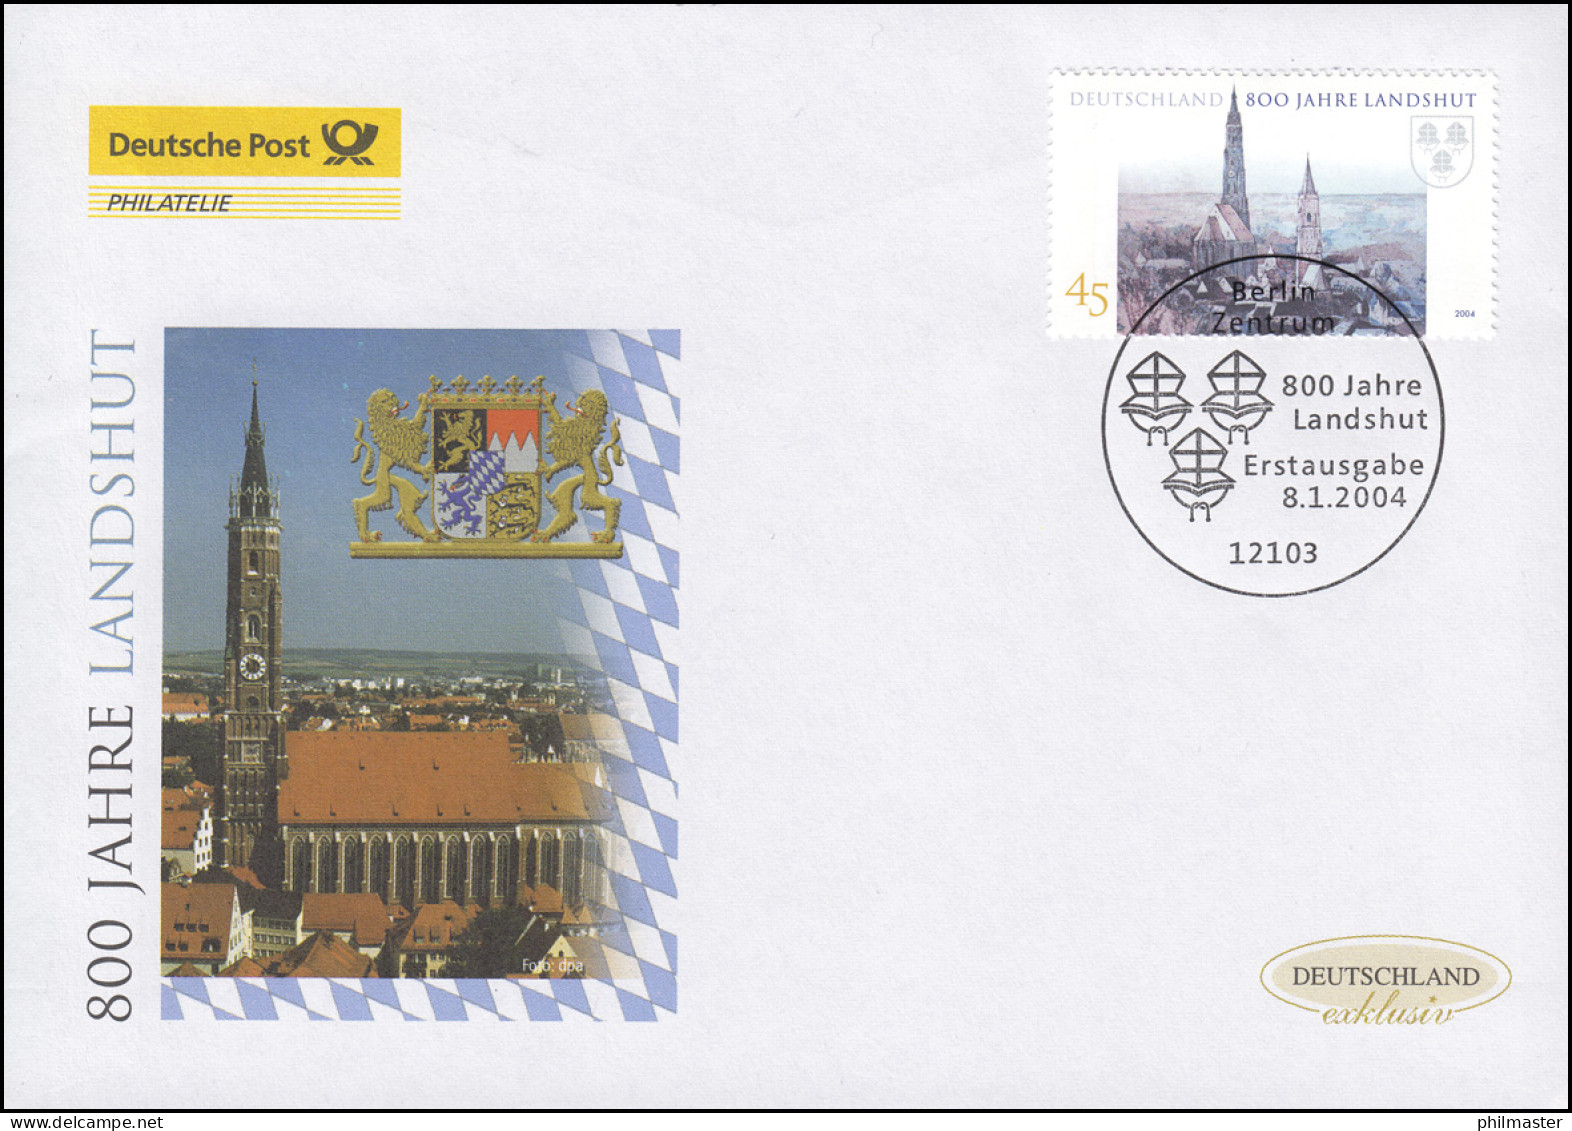 2376 Jubiläum 800 Jahre Landshut, Schmuck-FDC Deutschland Exklusiv - Covers & Documents